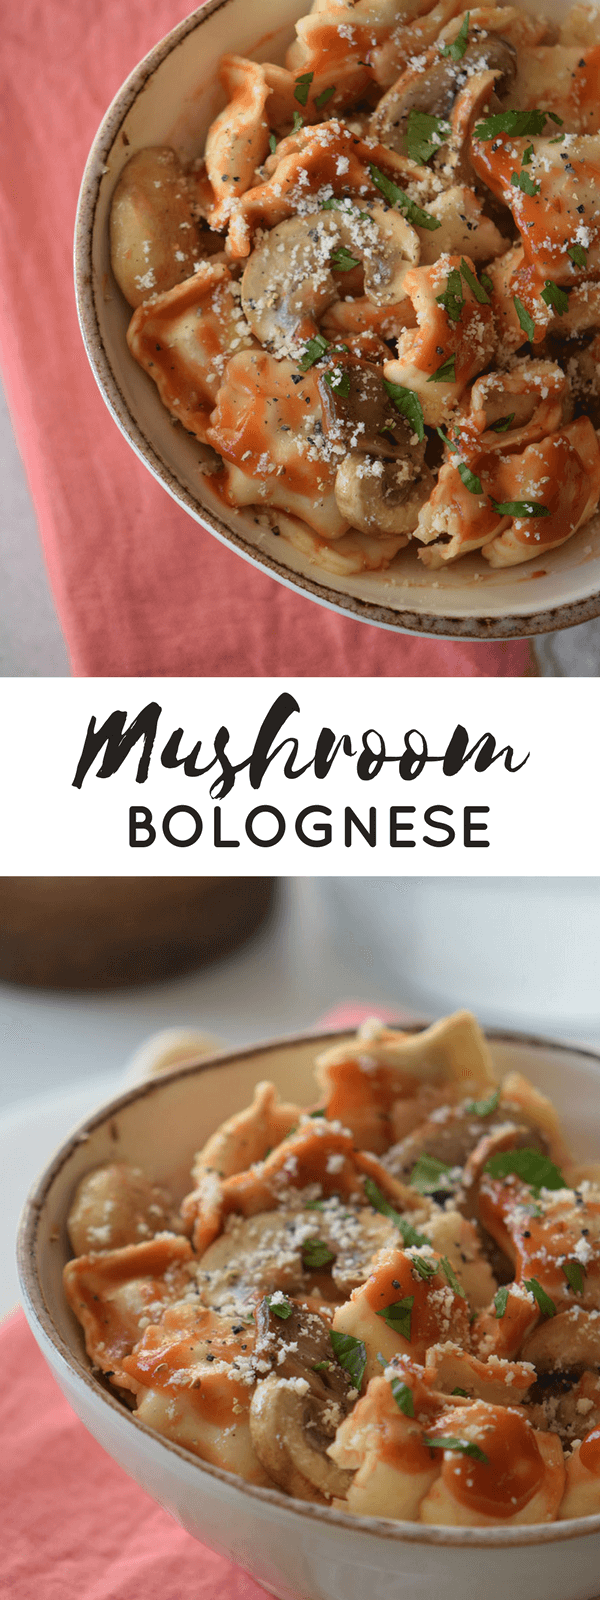 Mushroom Bolognese pinterest image.